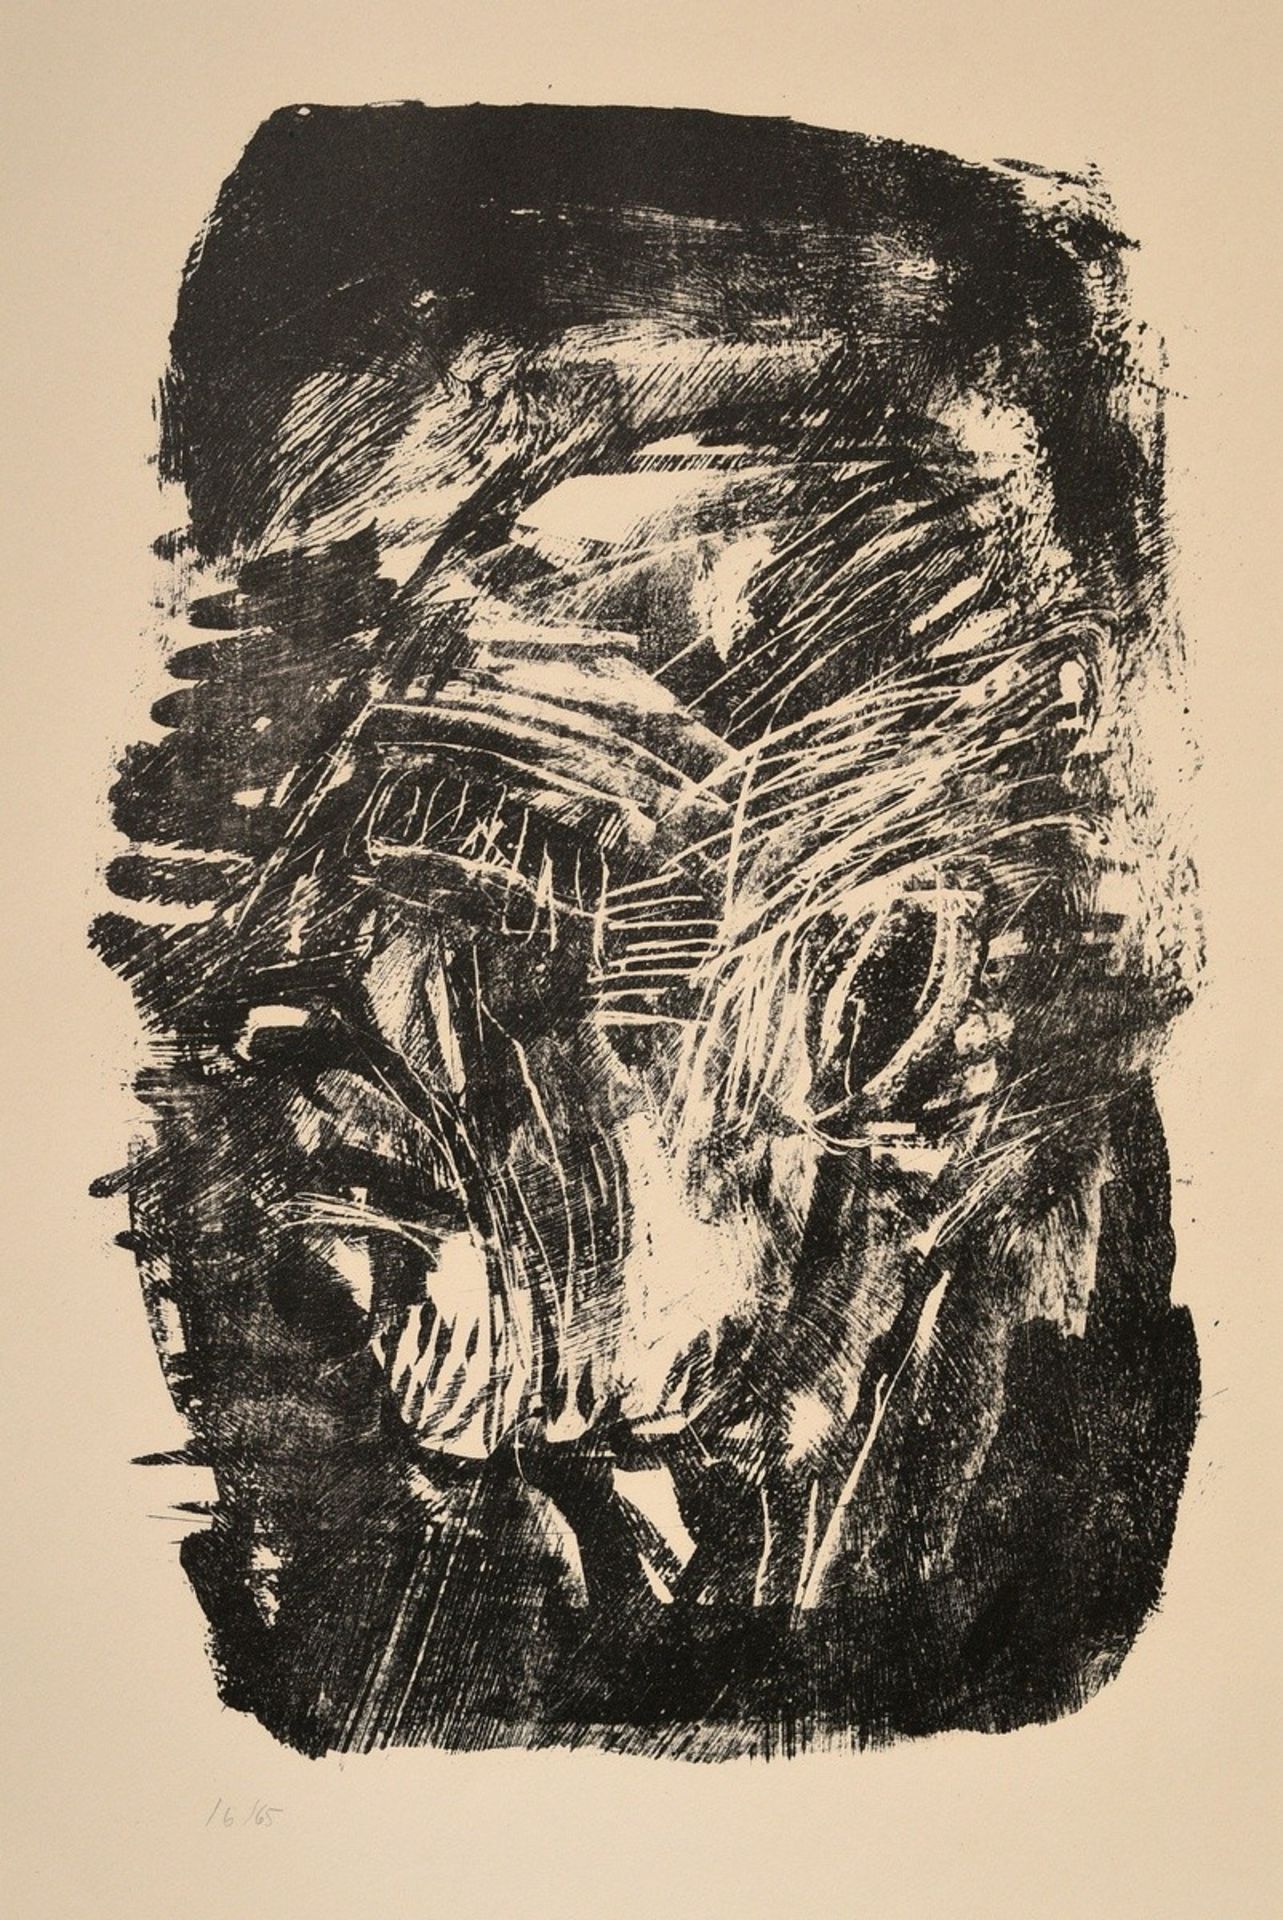 Dix, Otto (1891-1969) 'Self-Portrait I' 1969, lithograph, 16/65, num., verso estate stamp and sign.